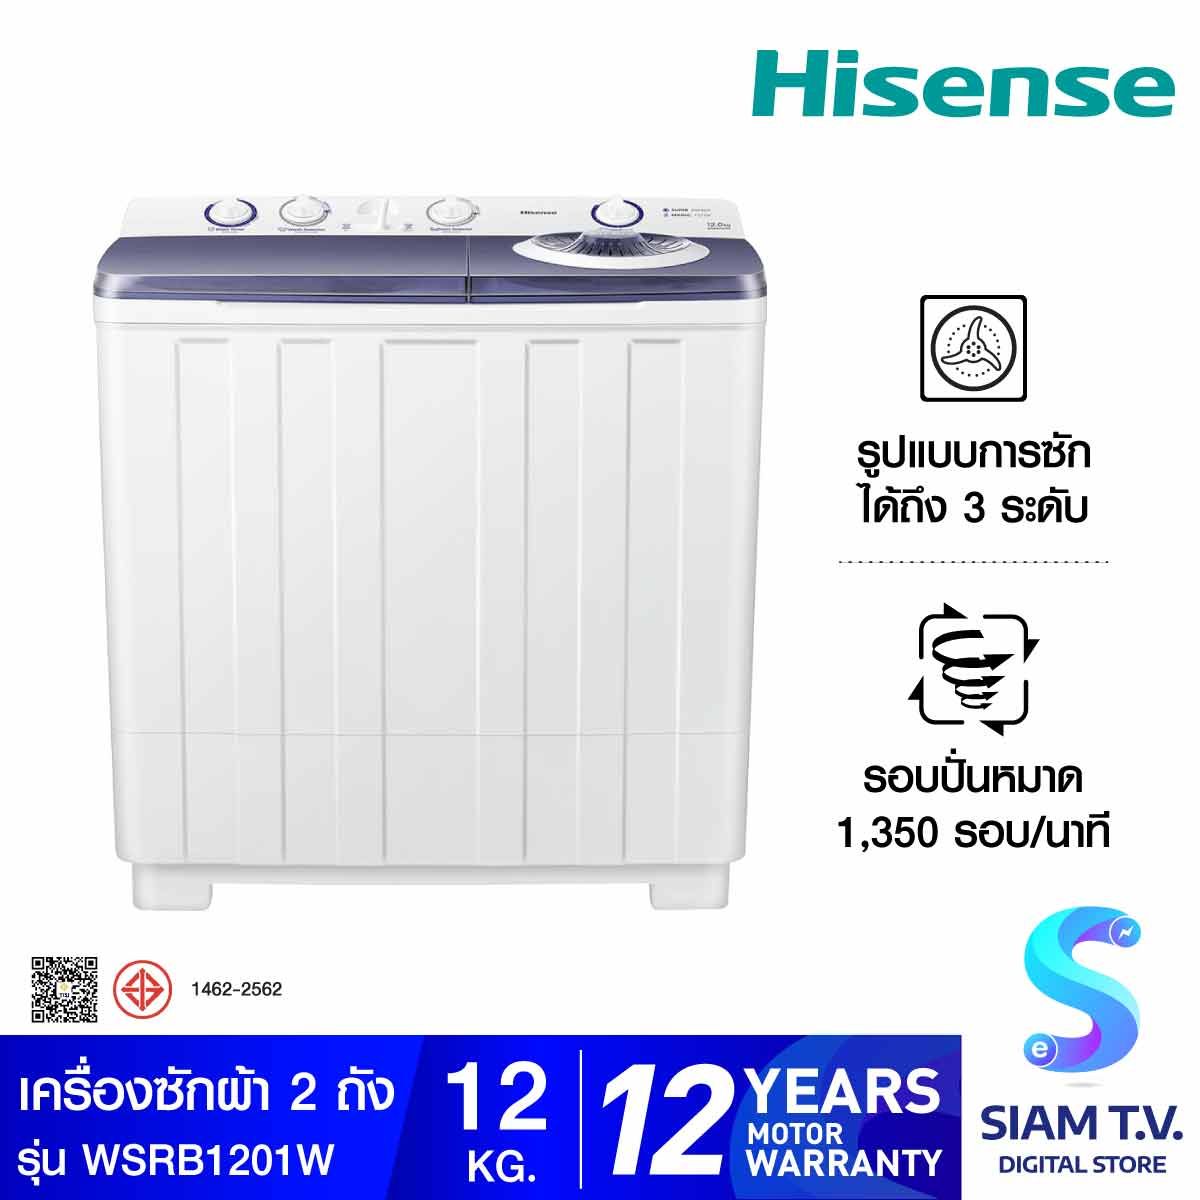 HISENSE เครื่องซักผ้า 2ถัง 12Kg. สีขาว รุ่น WSRB1201W